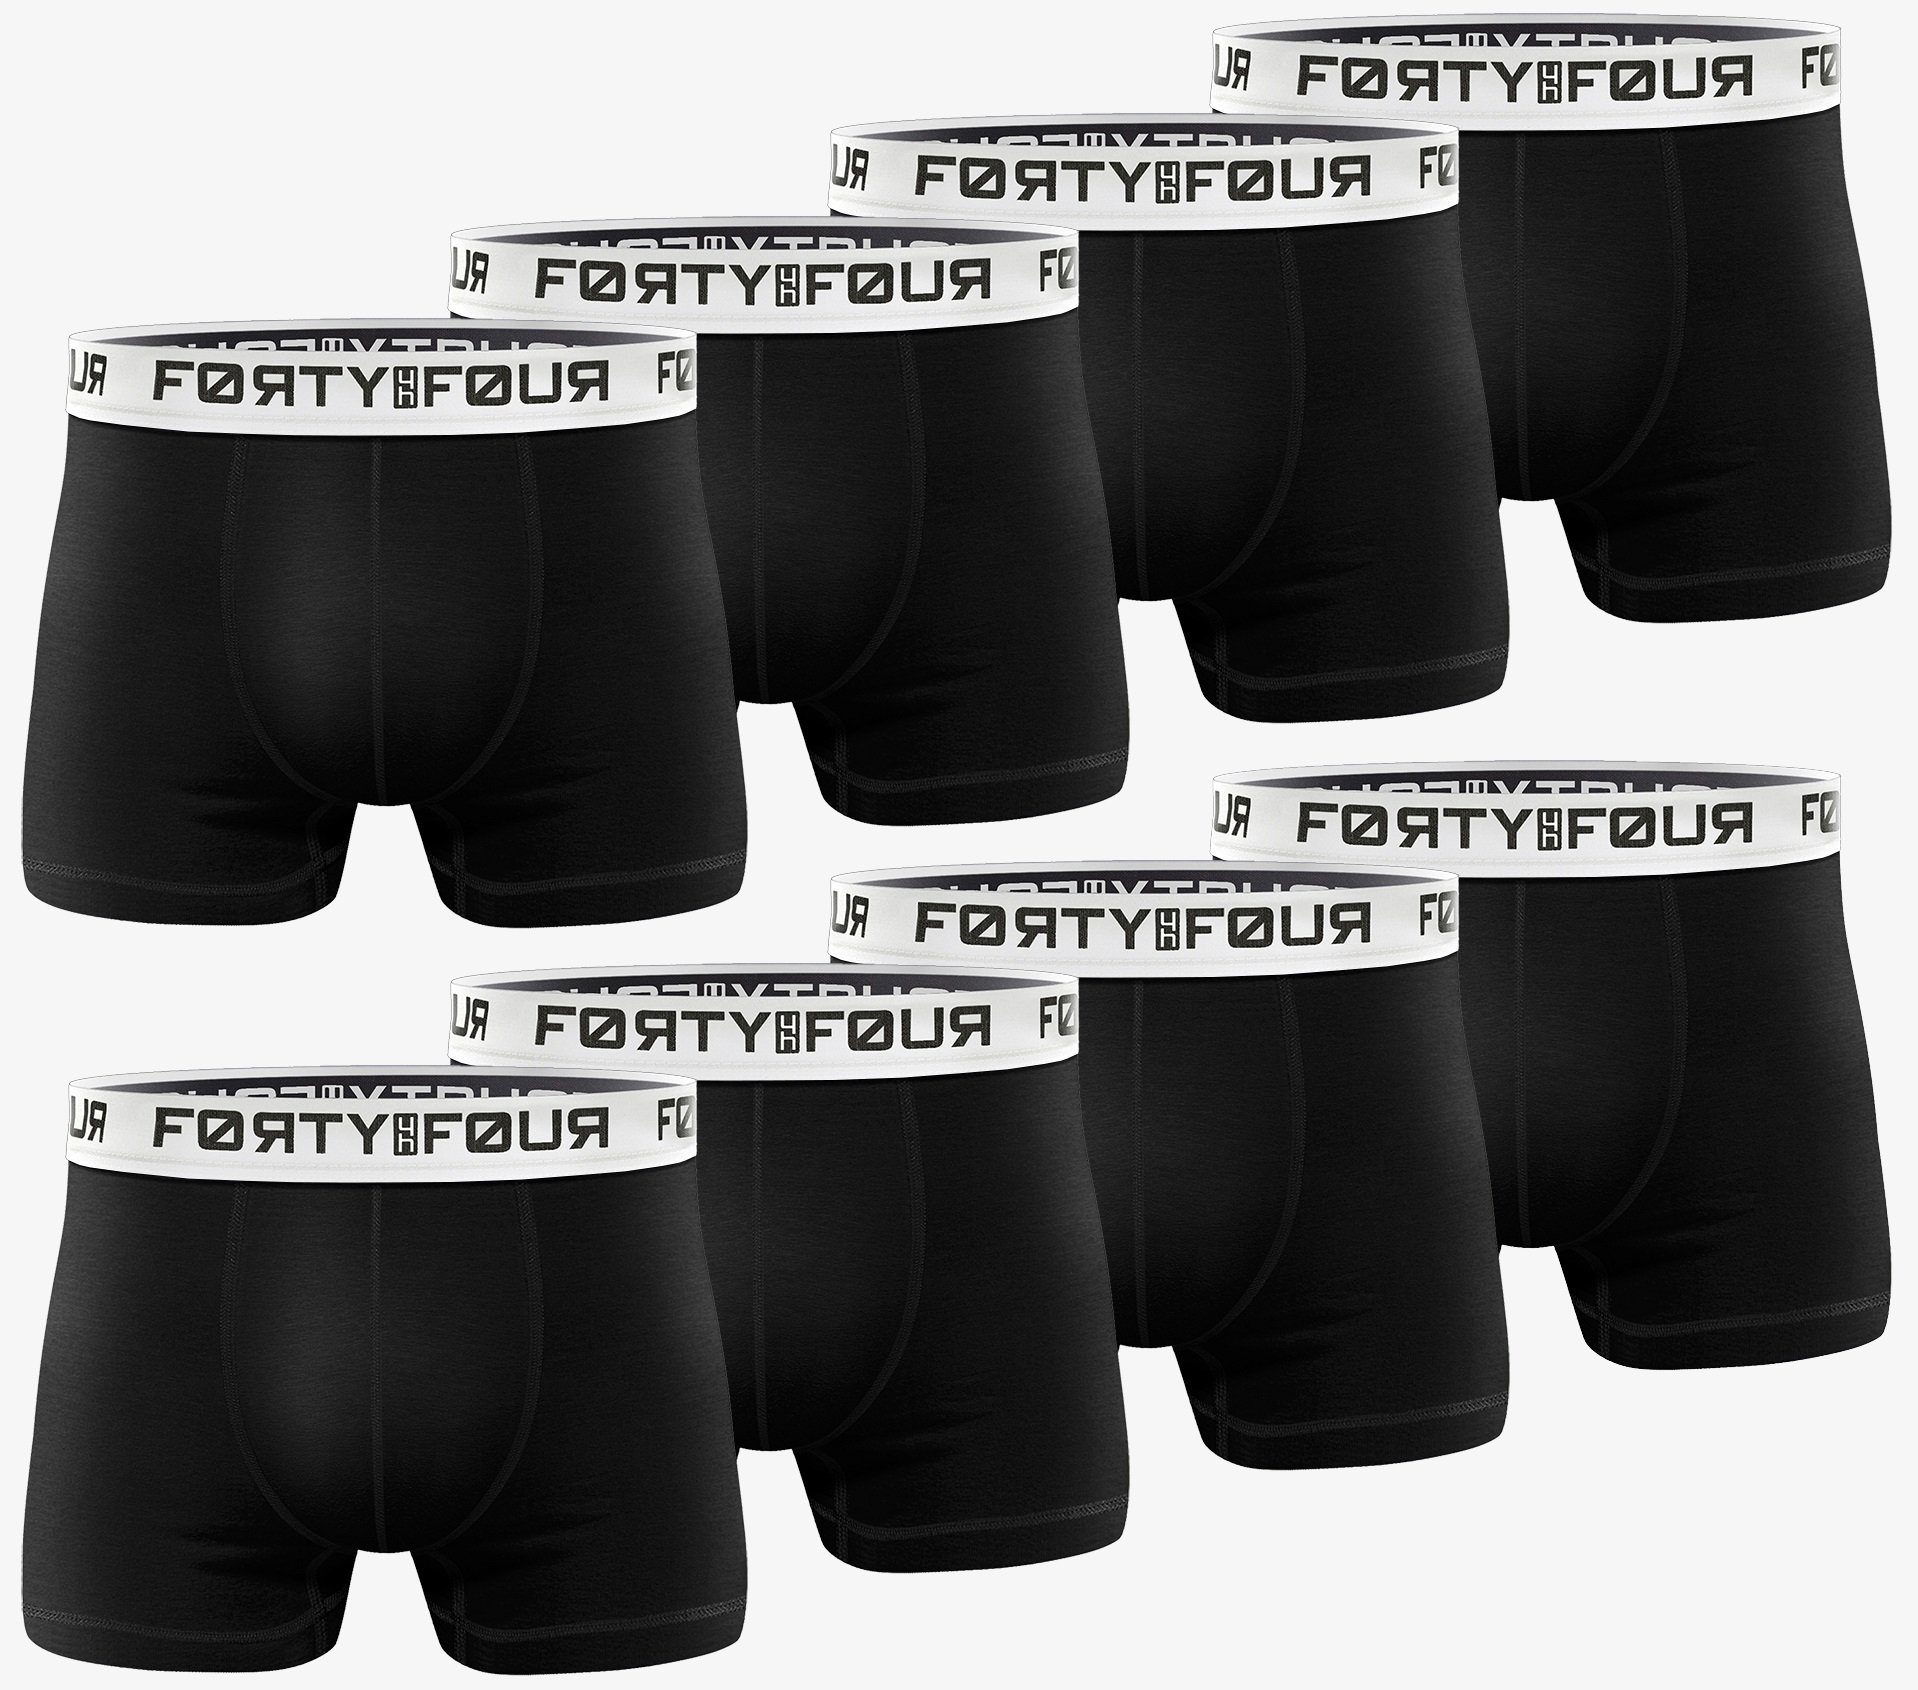 Männer Herren 8er (Vorteilspack, S 7XL FortyFour Qualität perfekte 715b-schwarz Pack) Baumwolle Passform Boxershorts Unterhosen Premium -